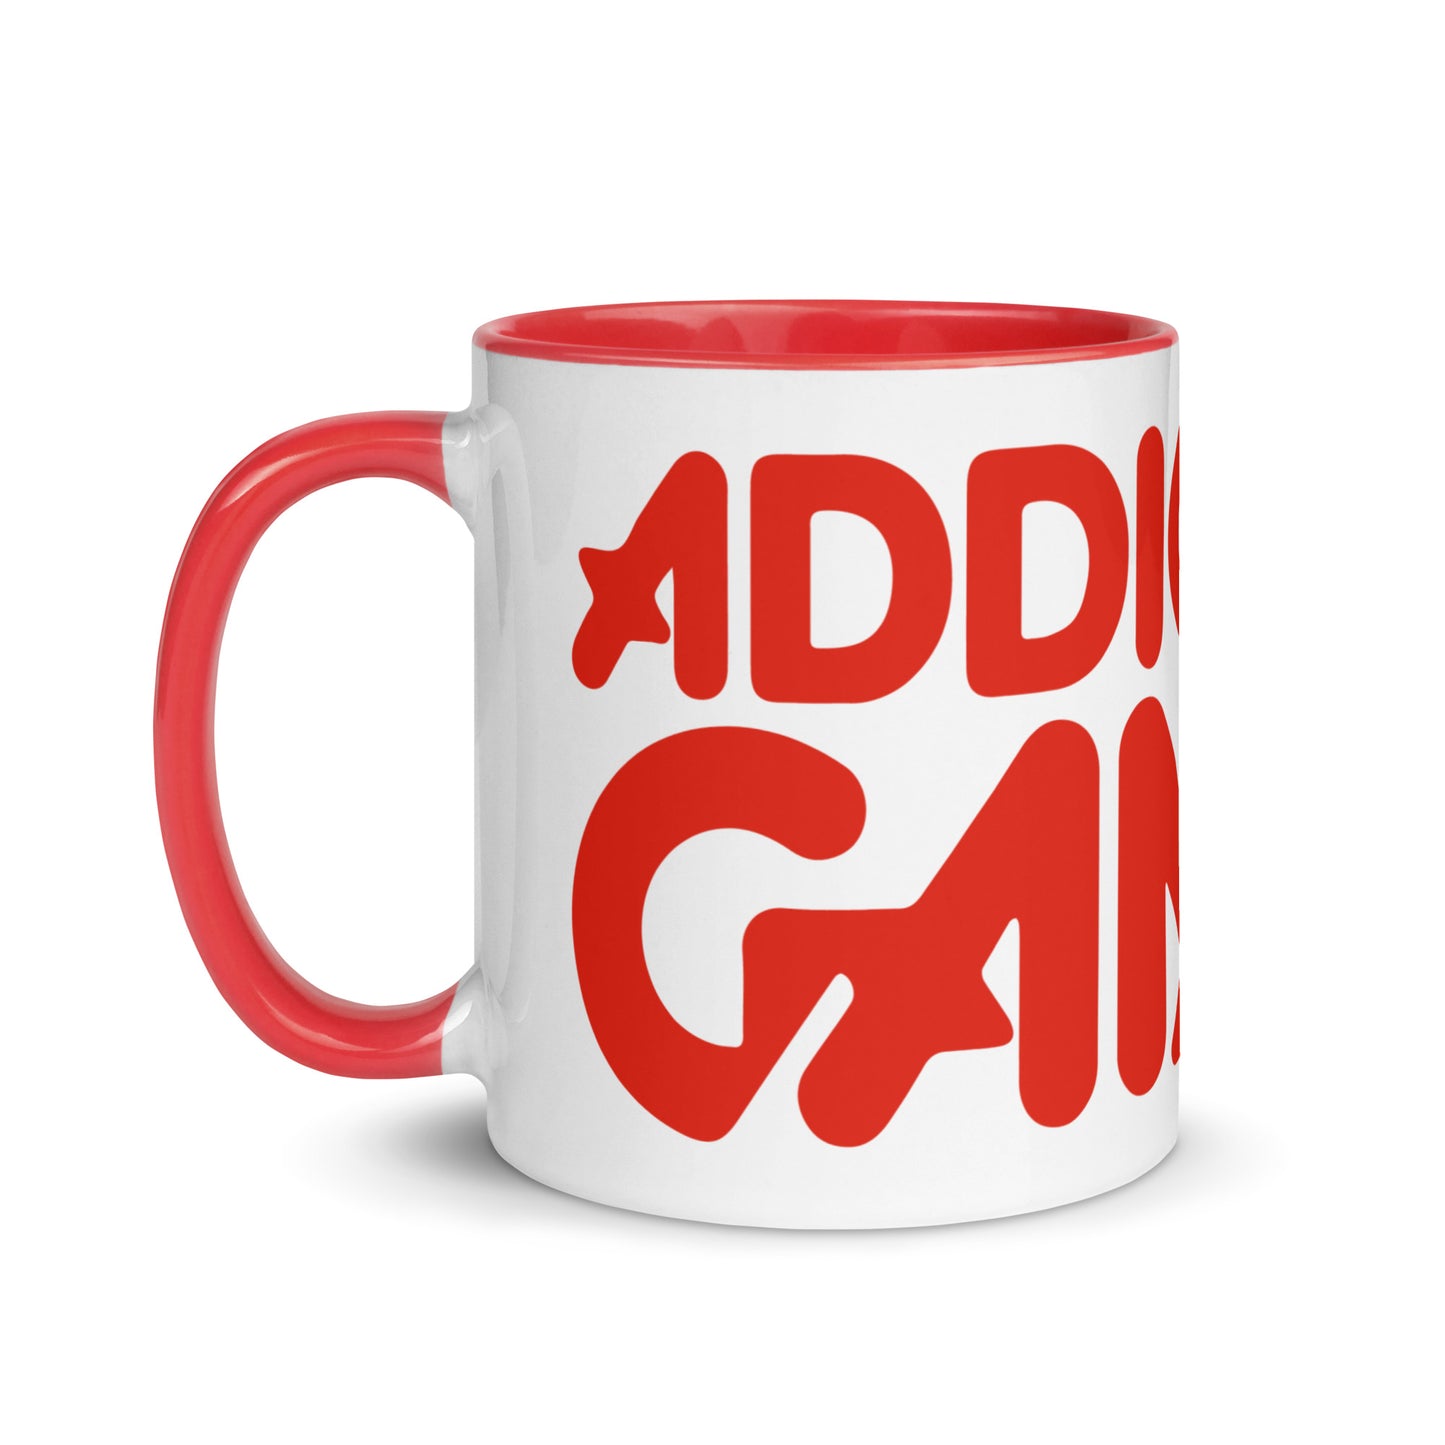 AG logo mug with red interior